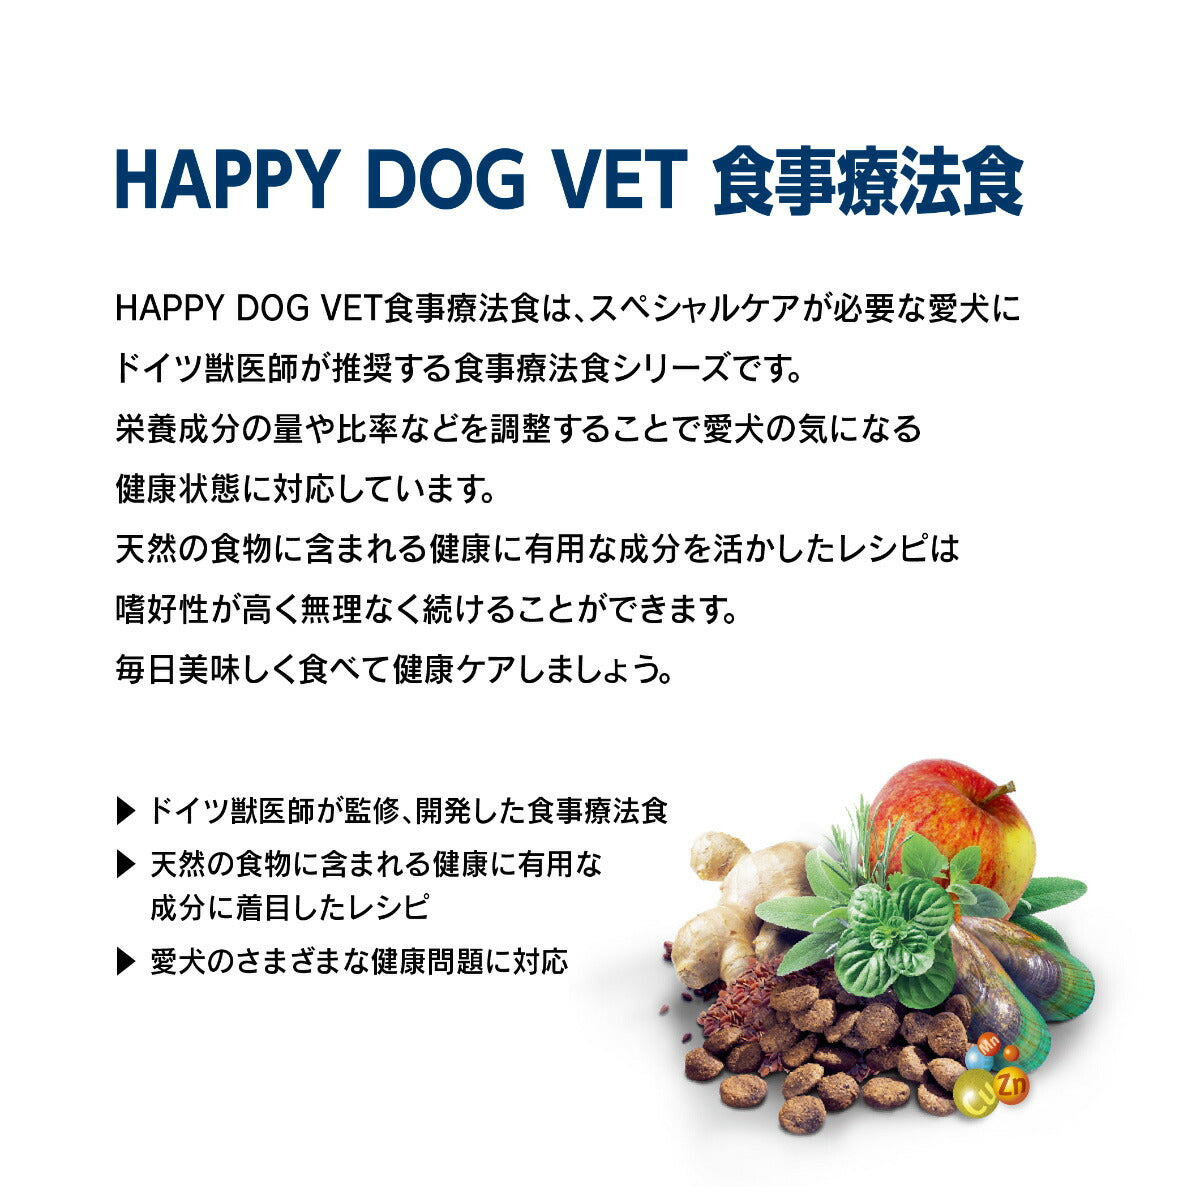 ハッピードッグ HAPPY DOG VET ドッグフード 犬用療法食 アディポシタス（肥満ケア）ウェット缶 400g